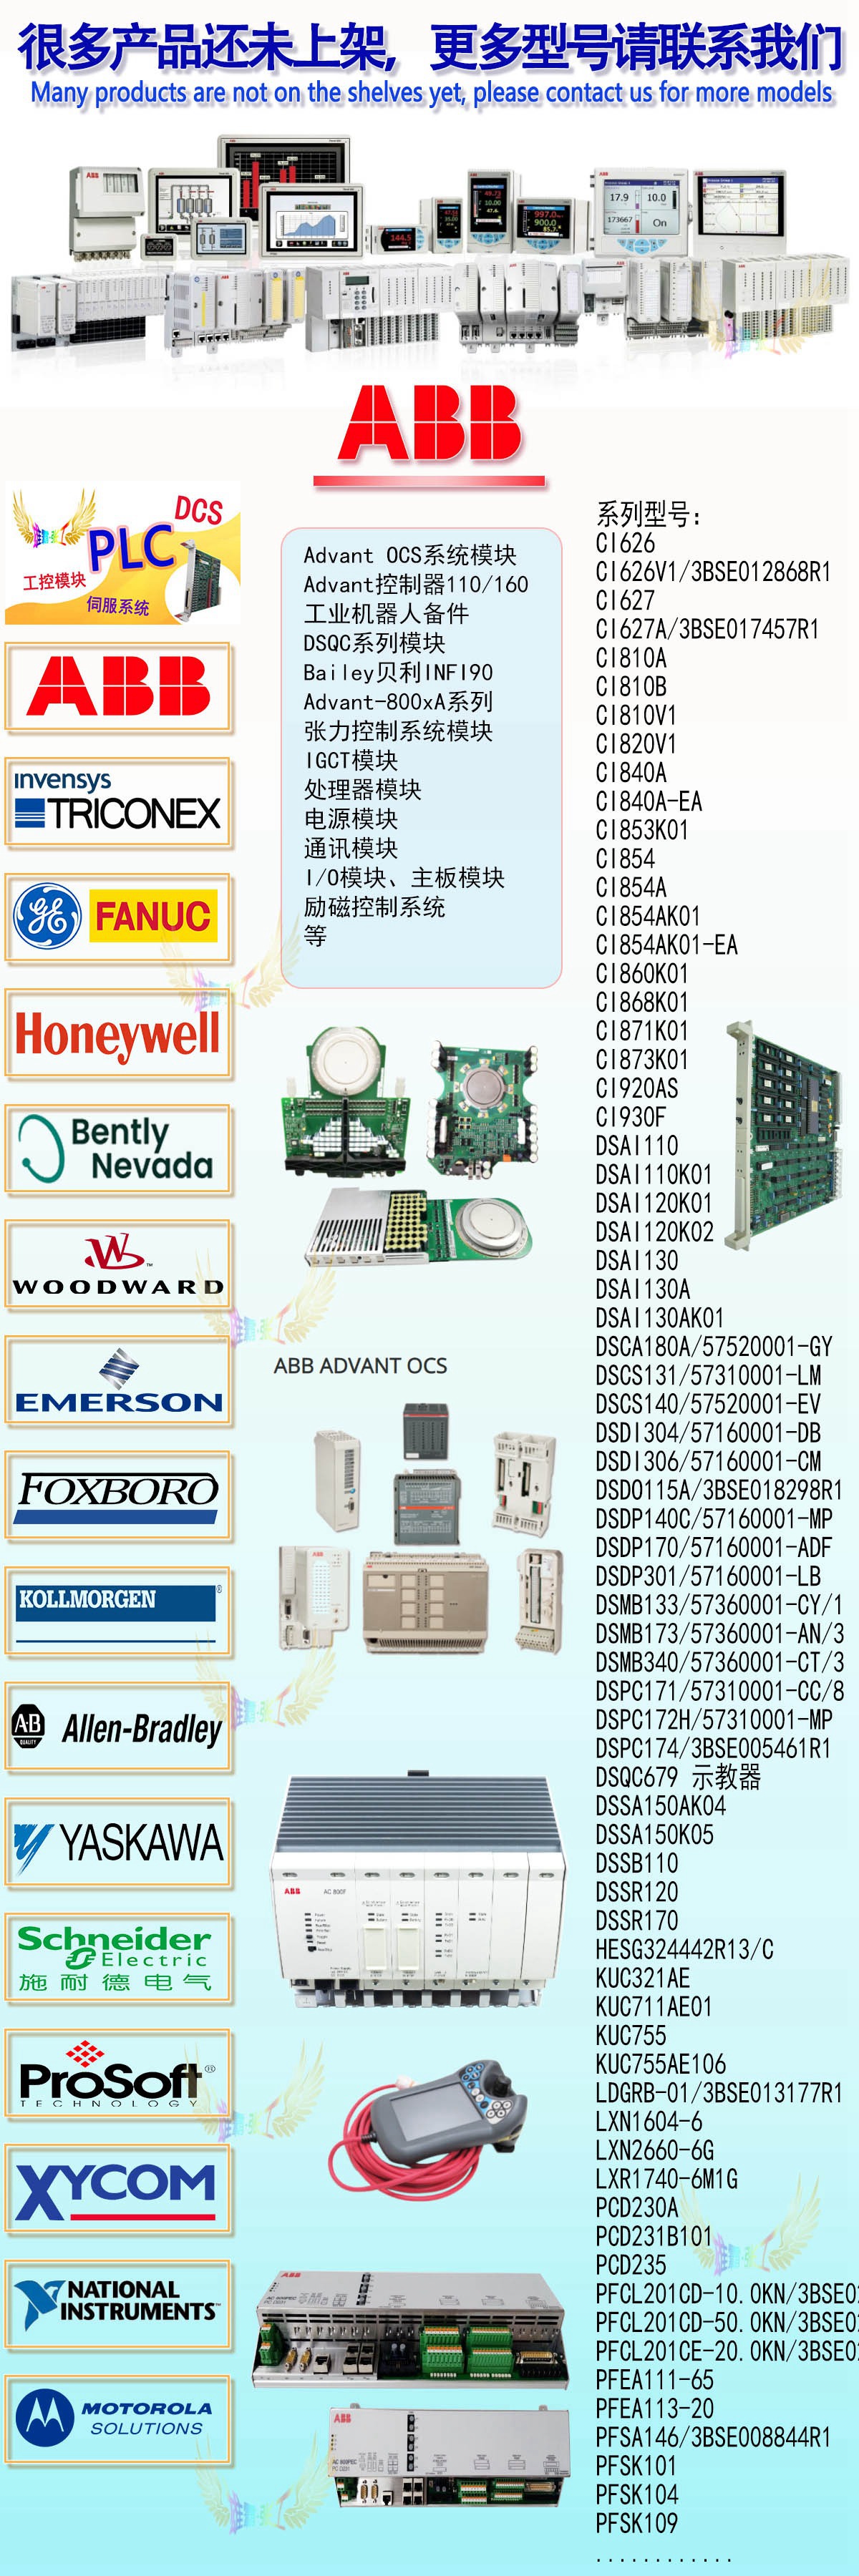 霍尼韦尔51304754-150 MC-PAIH03 模拟输入处理器 